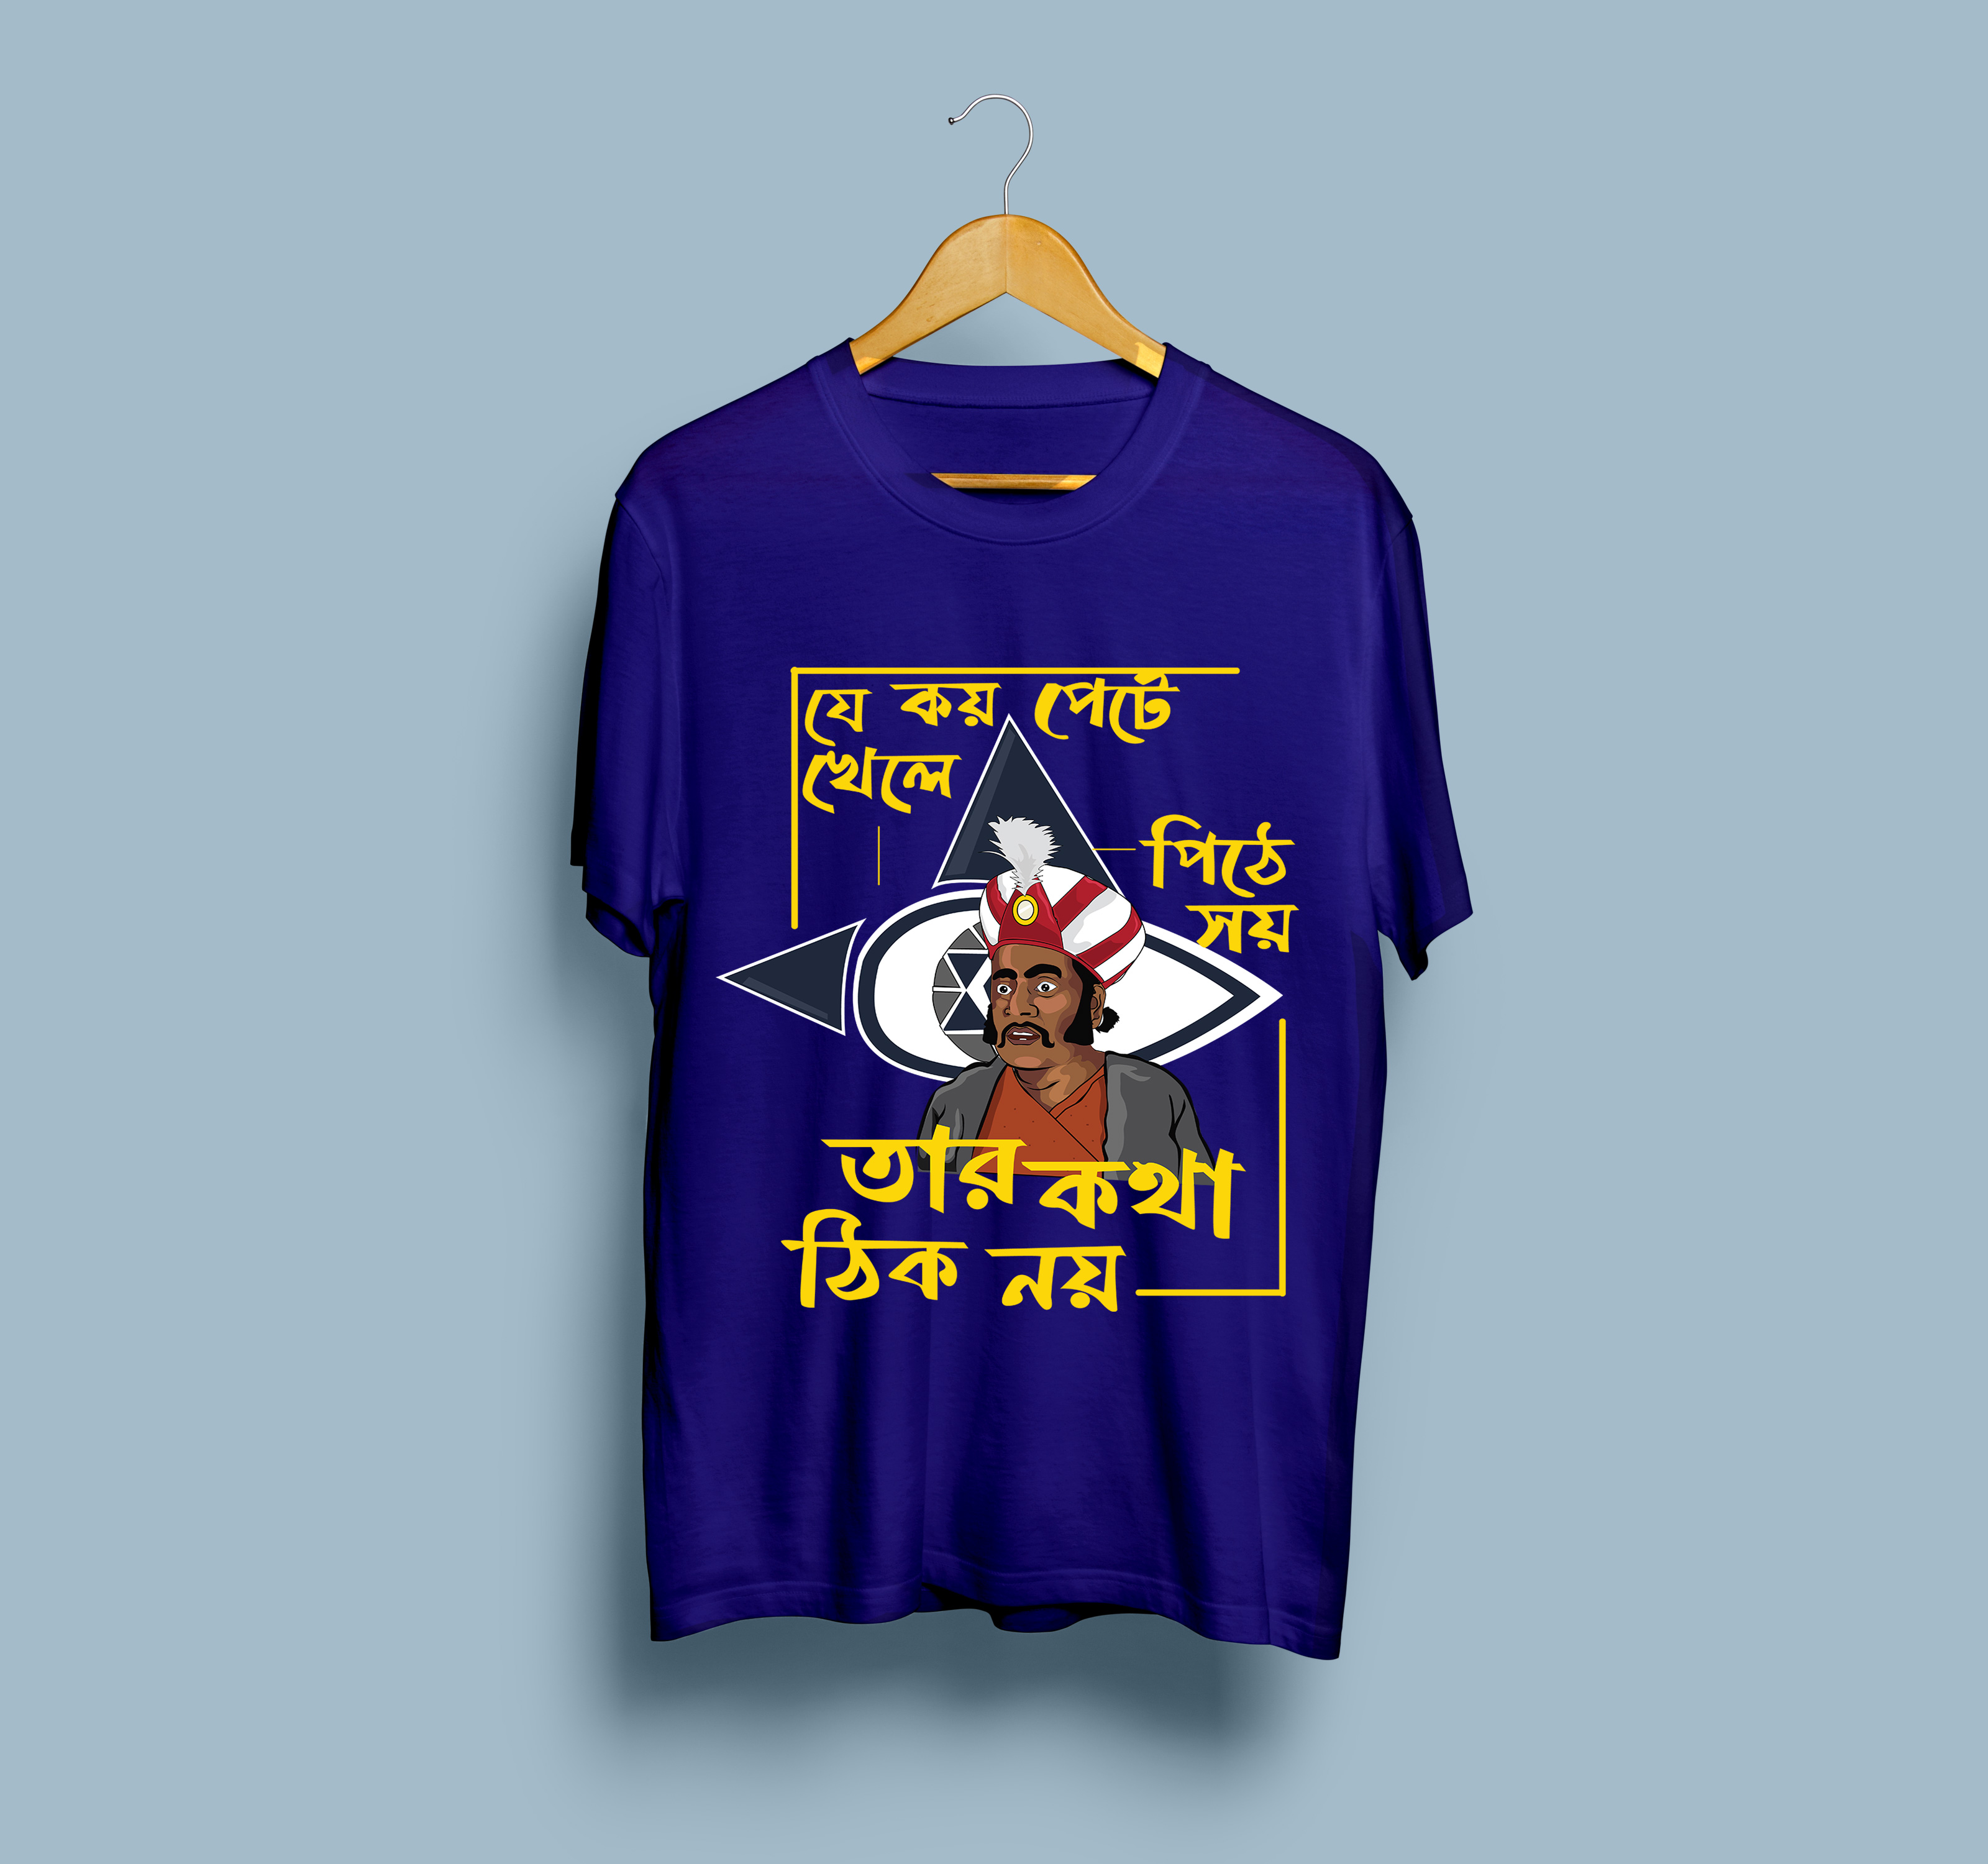 Bengali graphic tshirt